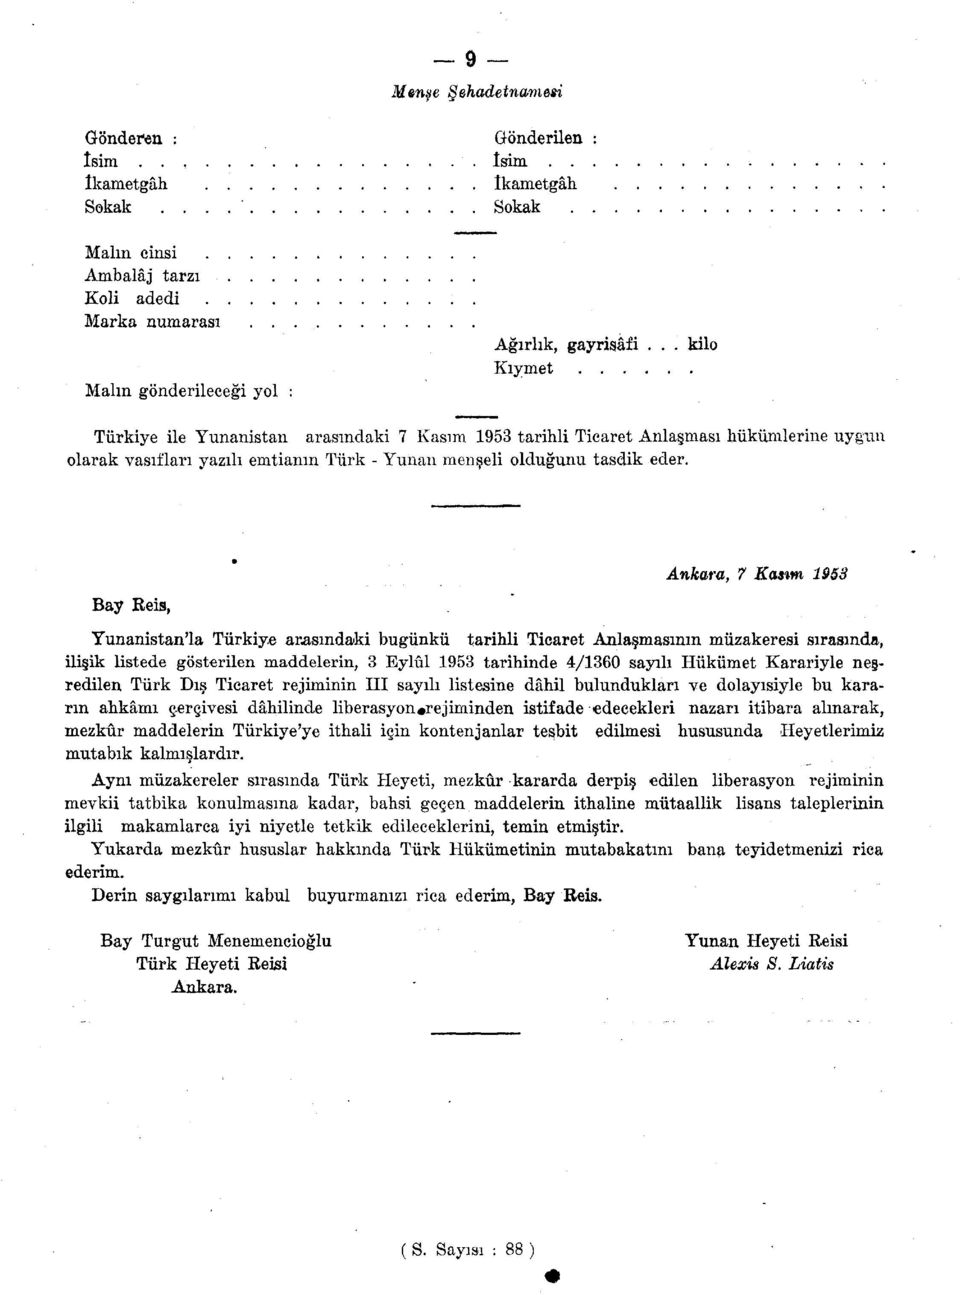 Bay Reis, Ankara, 7 Kasım 1953 Yunanistan'la Türkiye aracındaki bugünkü tarihli Ticaret Anlaşmasının müzakeresi sırasında, ilişik listede gösterilen maddelerin, 3 Eylül 1953 tarihinde 4/1360 sayılı